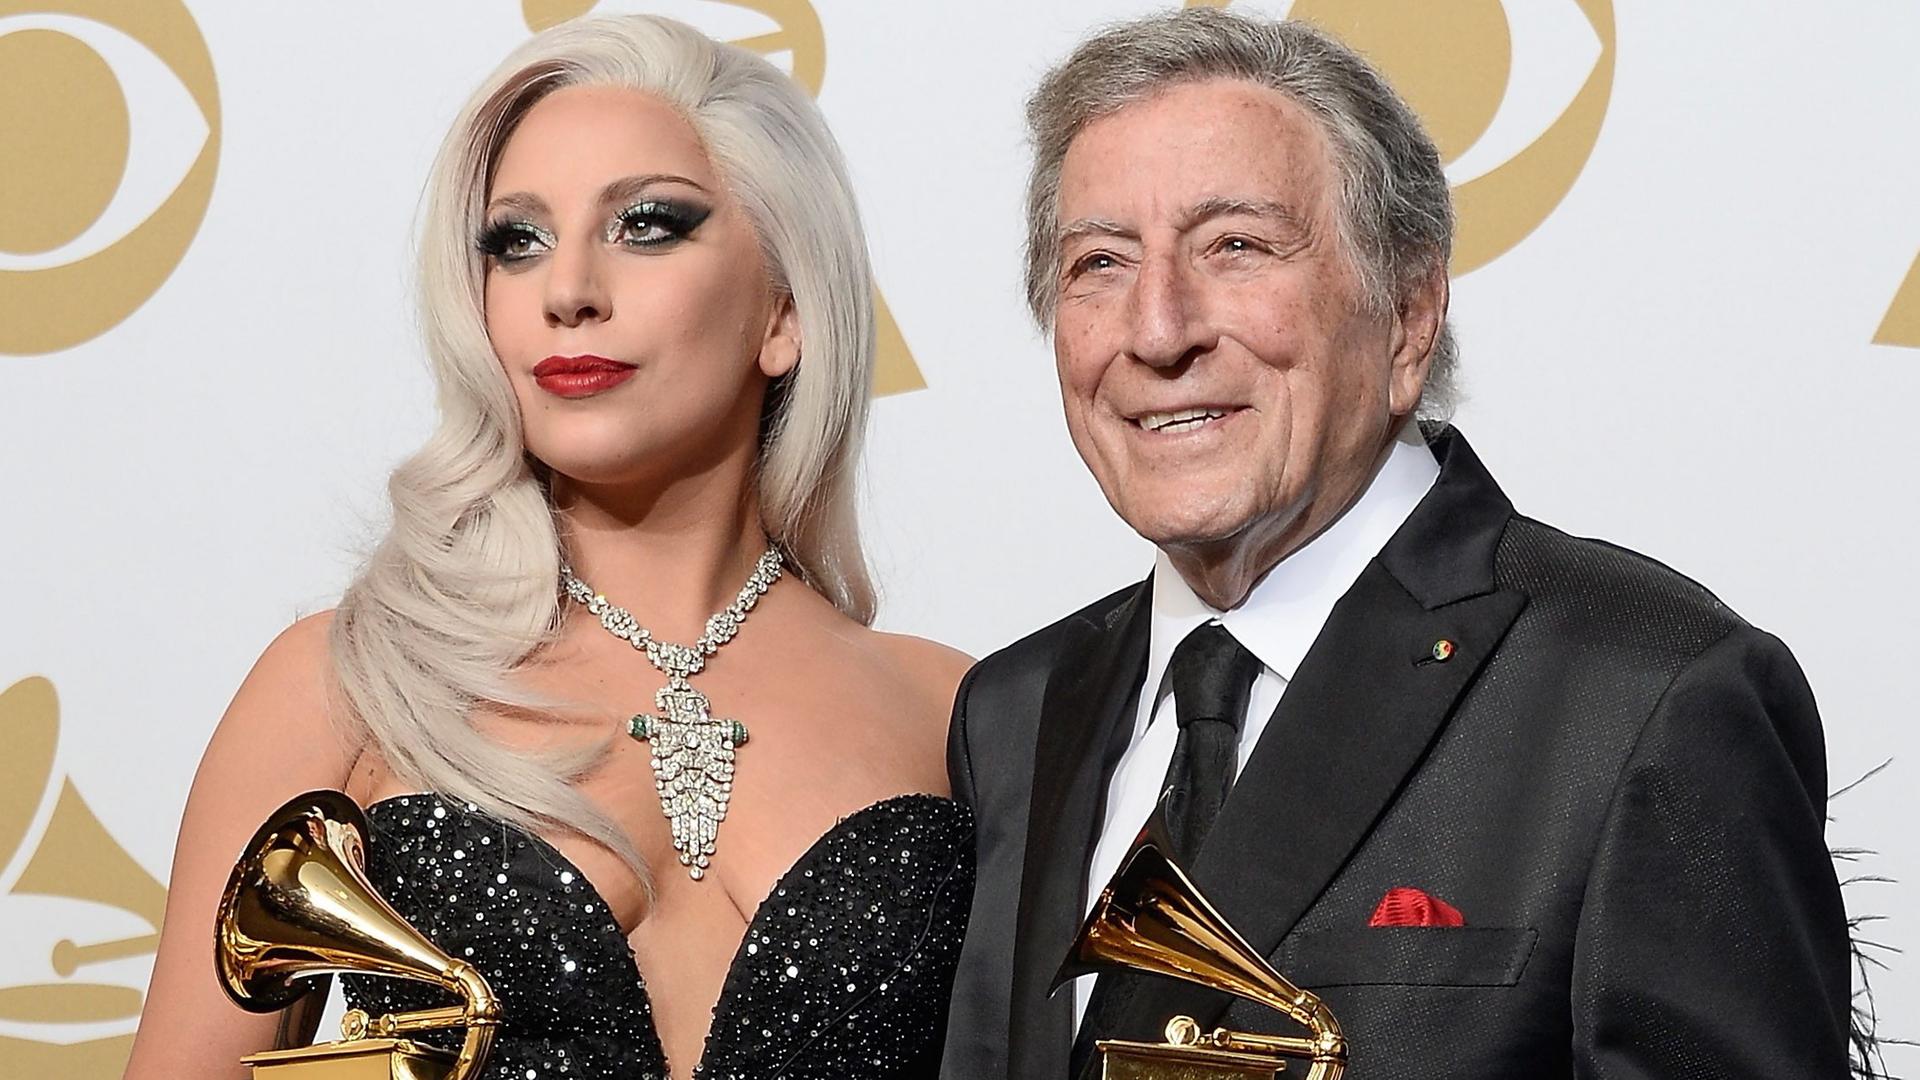 Lady Gaga und Tony Bennett halten ihre Awards für das "Beste traditionelle Pop-Vocal-Album" bei den 57. Grammy Awards.